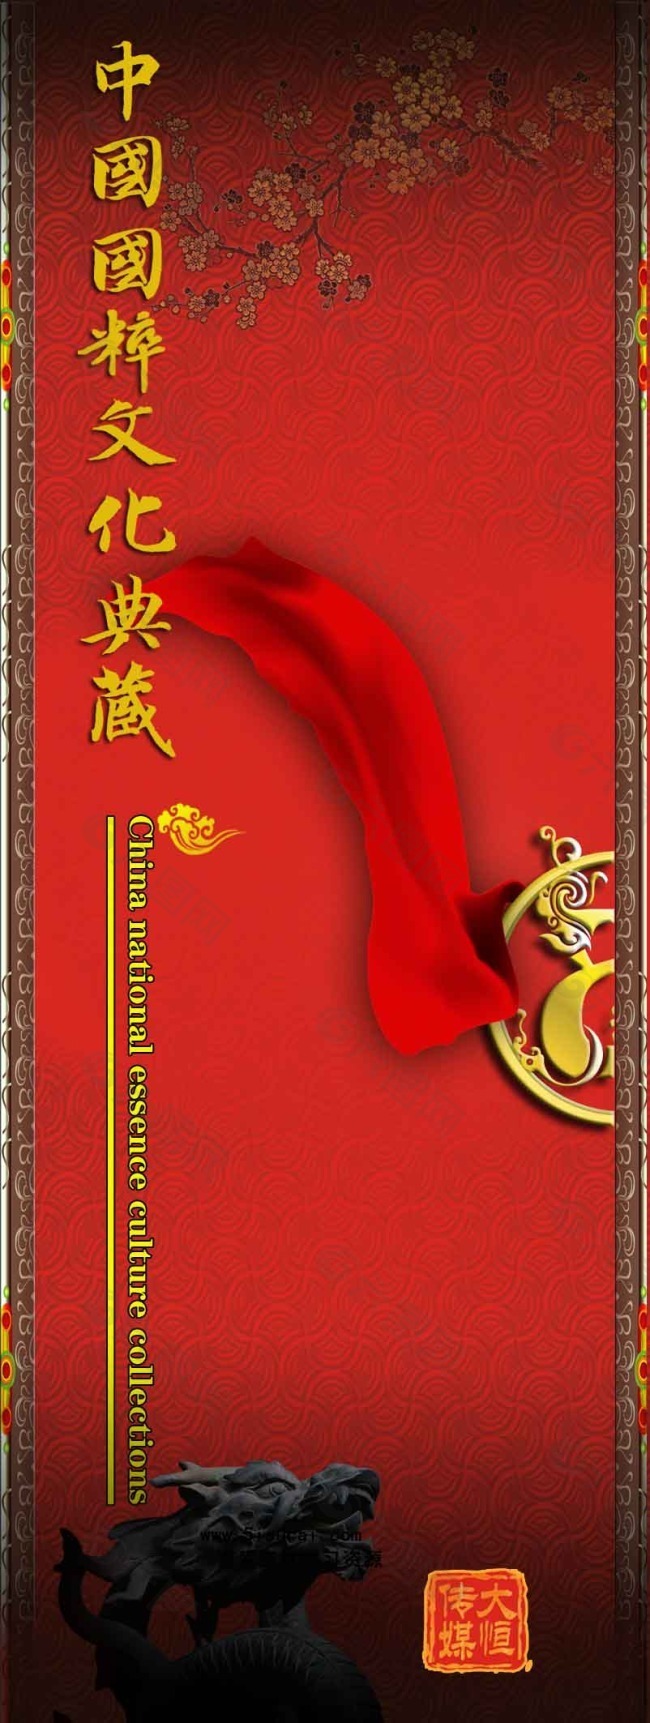 中国文化传统海报设计